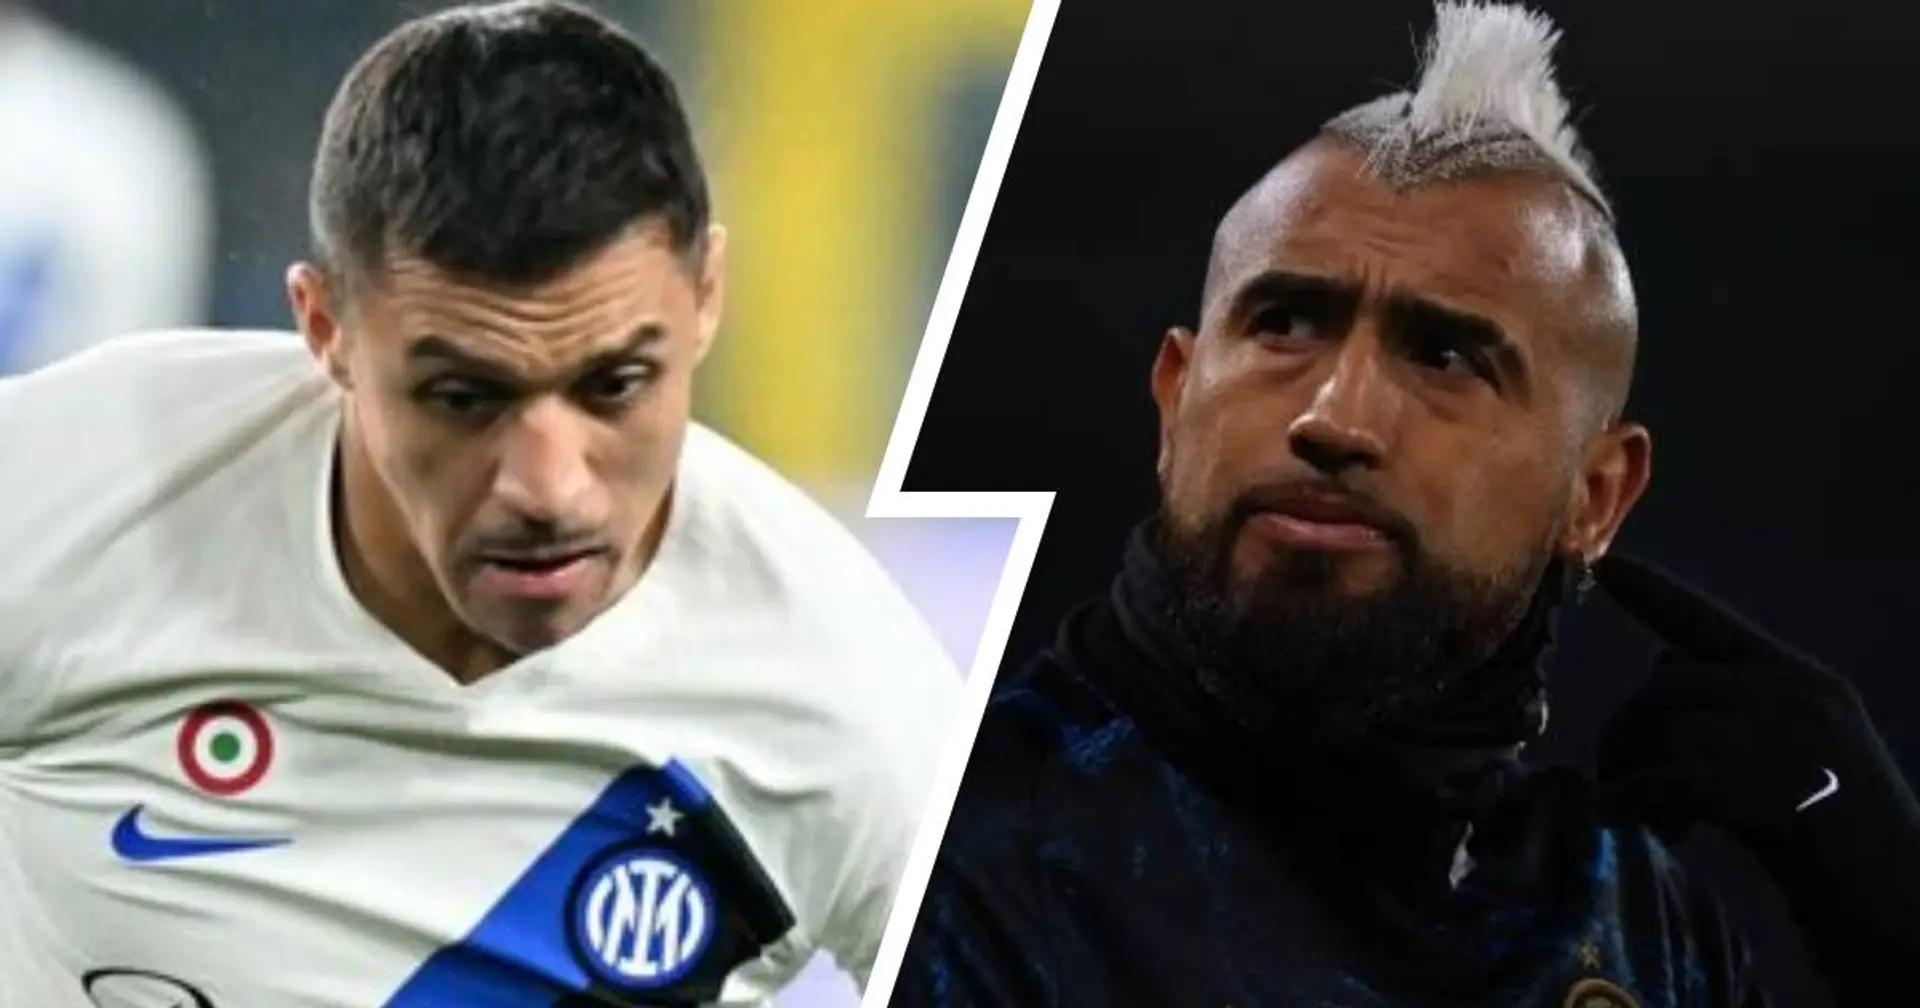 Da 'Stai zitto' a 'Alexis segui il suo consiglio!': lo sfogo di Vidal scatena i tifosi dell'Inter